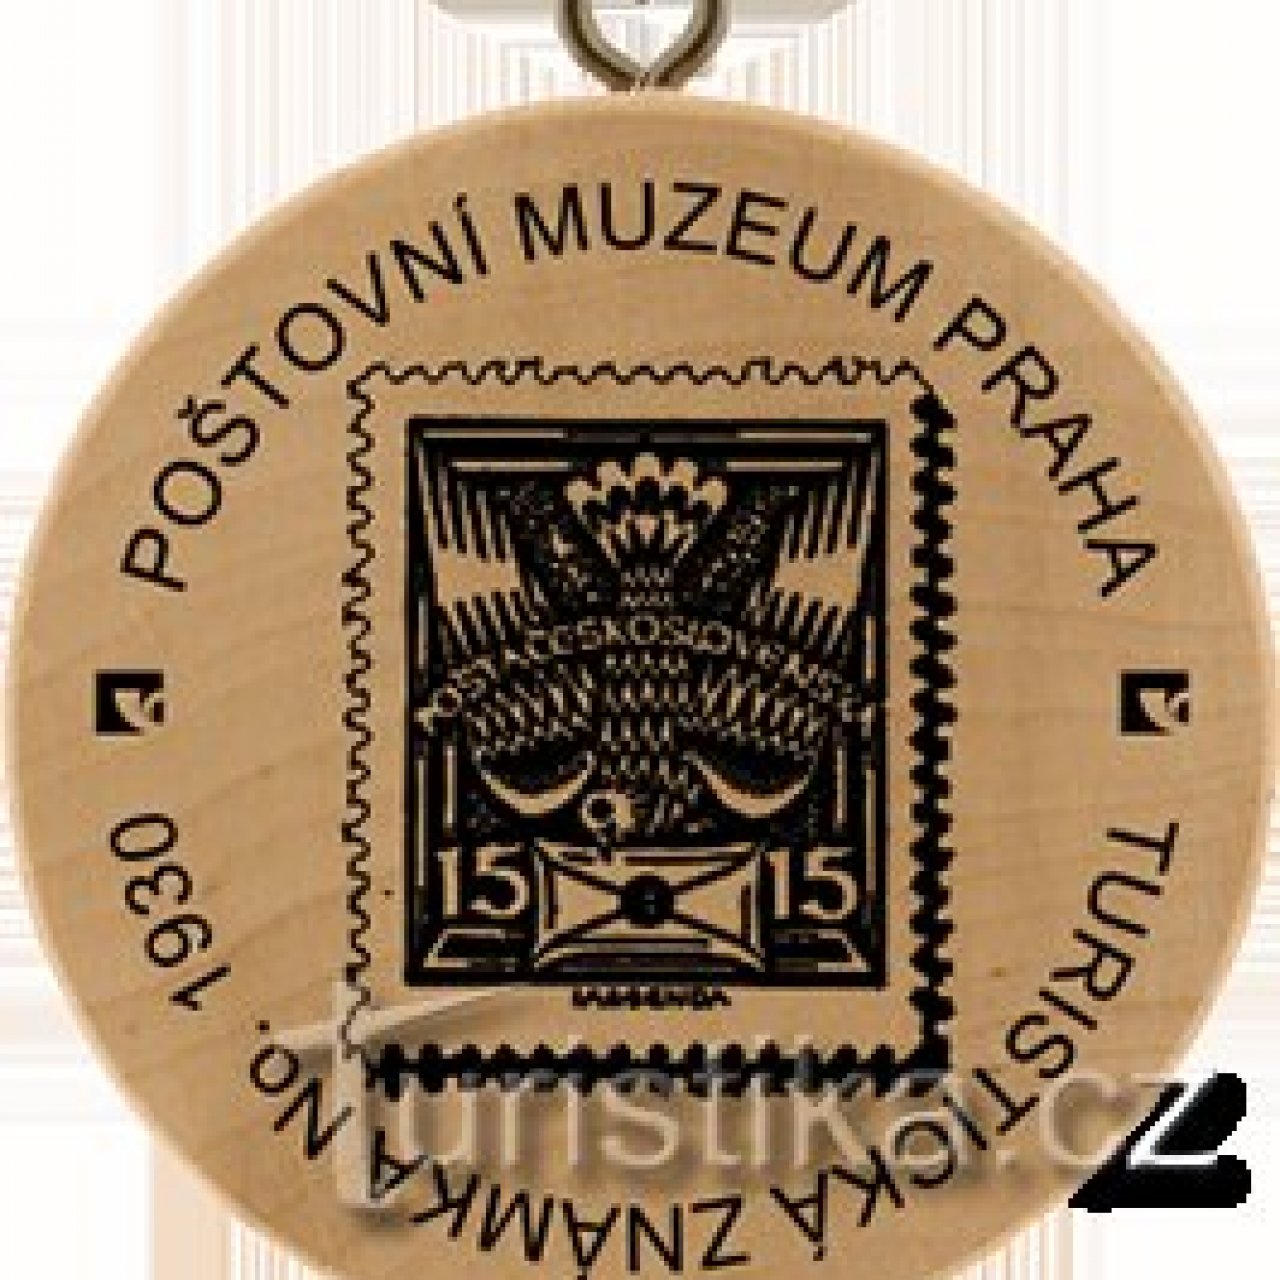 Turistická známka č. 1930 - Poštovní muzeum Praha